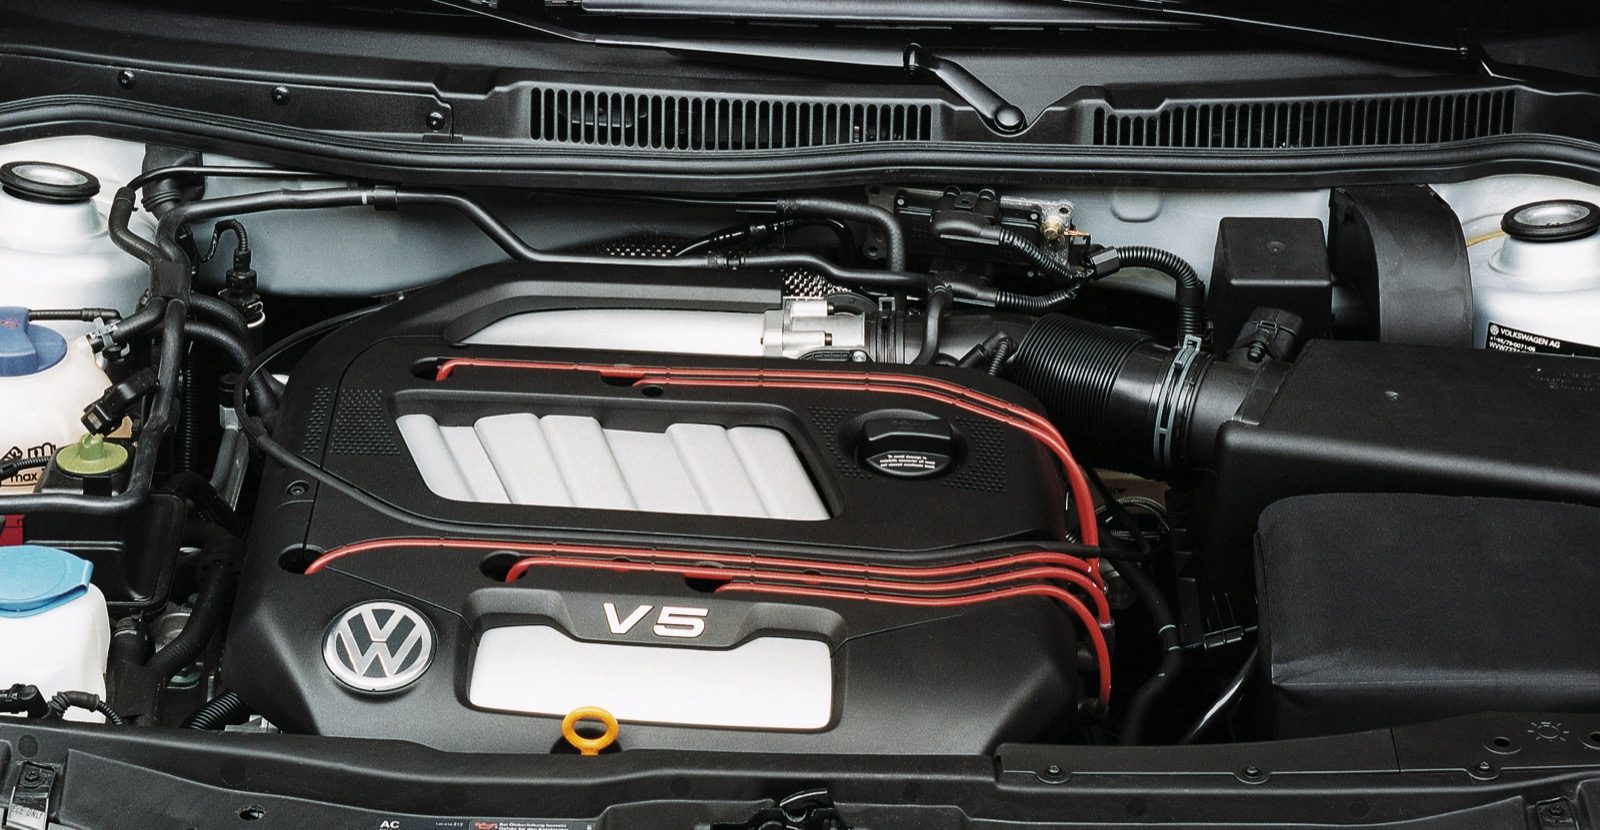 liefde weduwnaar Botsing 10 redenen waarom de Volkswagen Golf 4 briljant is - Autoblog.nl